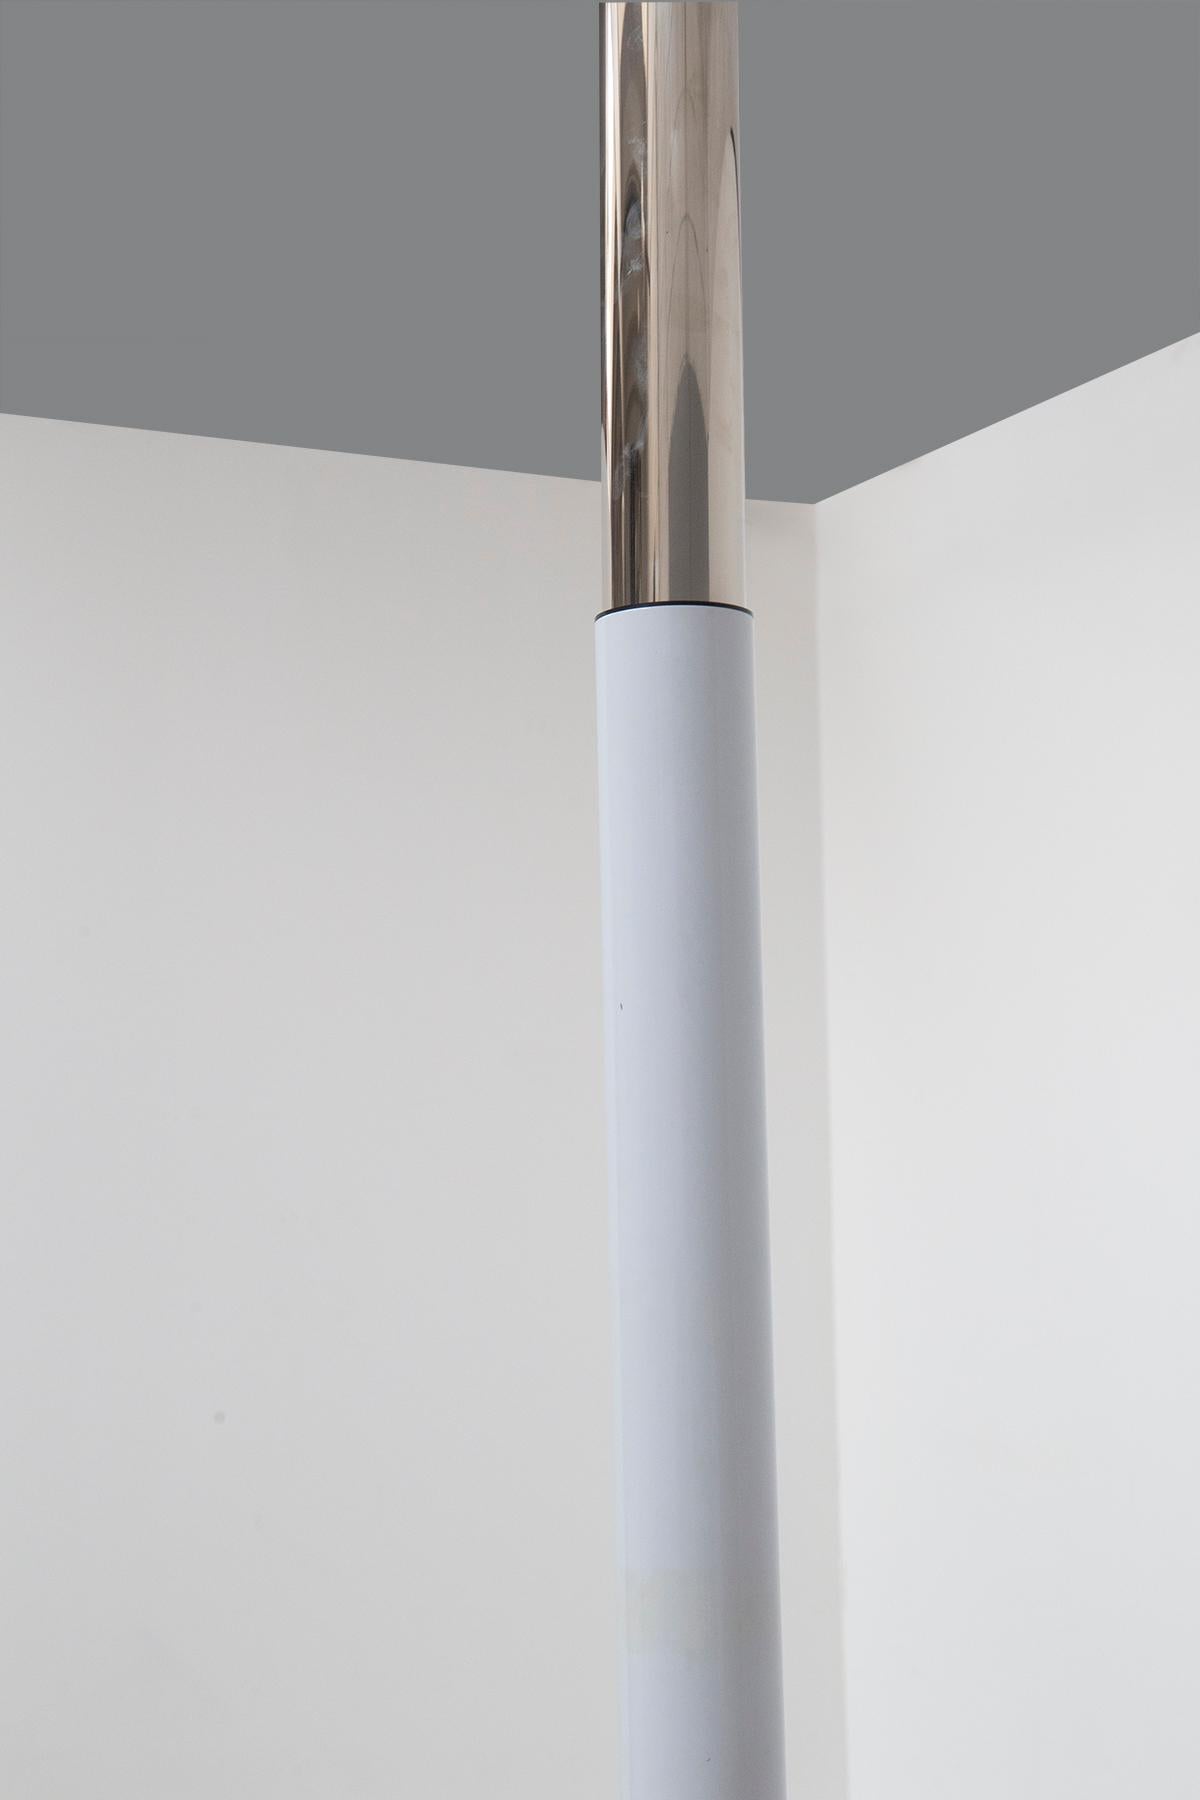 Umberto Riva Suspension Lamp for Bieffeplast, original box 2165 1